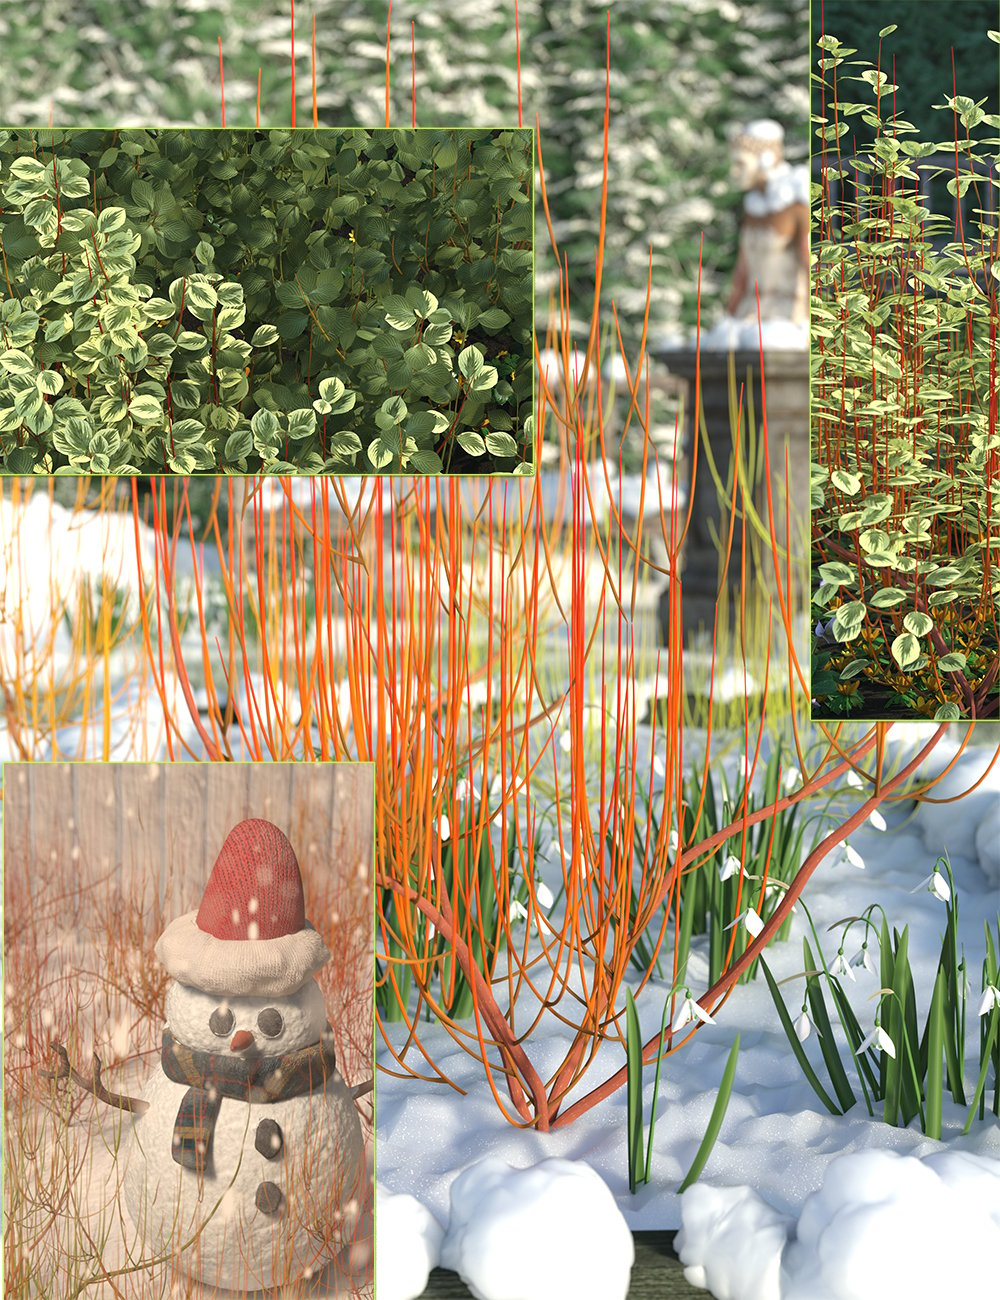 Winter Dogwood (Cornus) Bushes by: MartinJFrost, 3D Models by Daz 3D